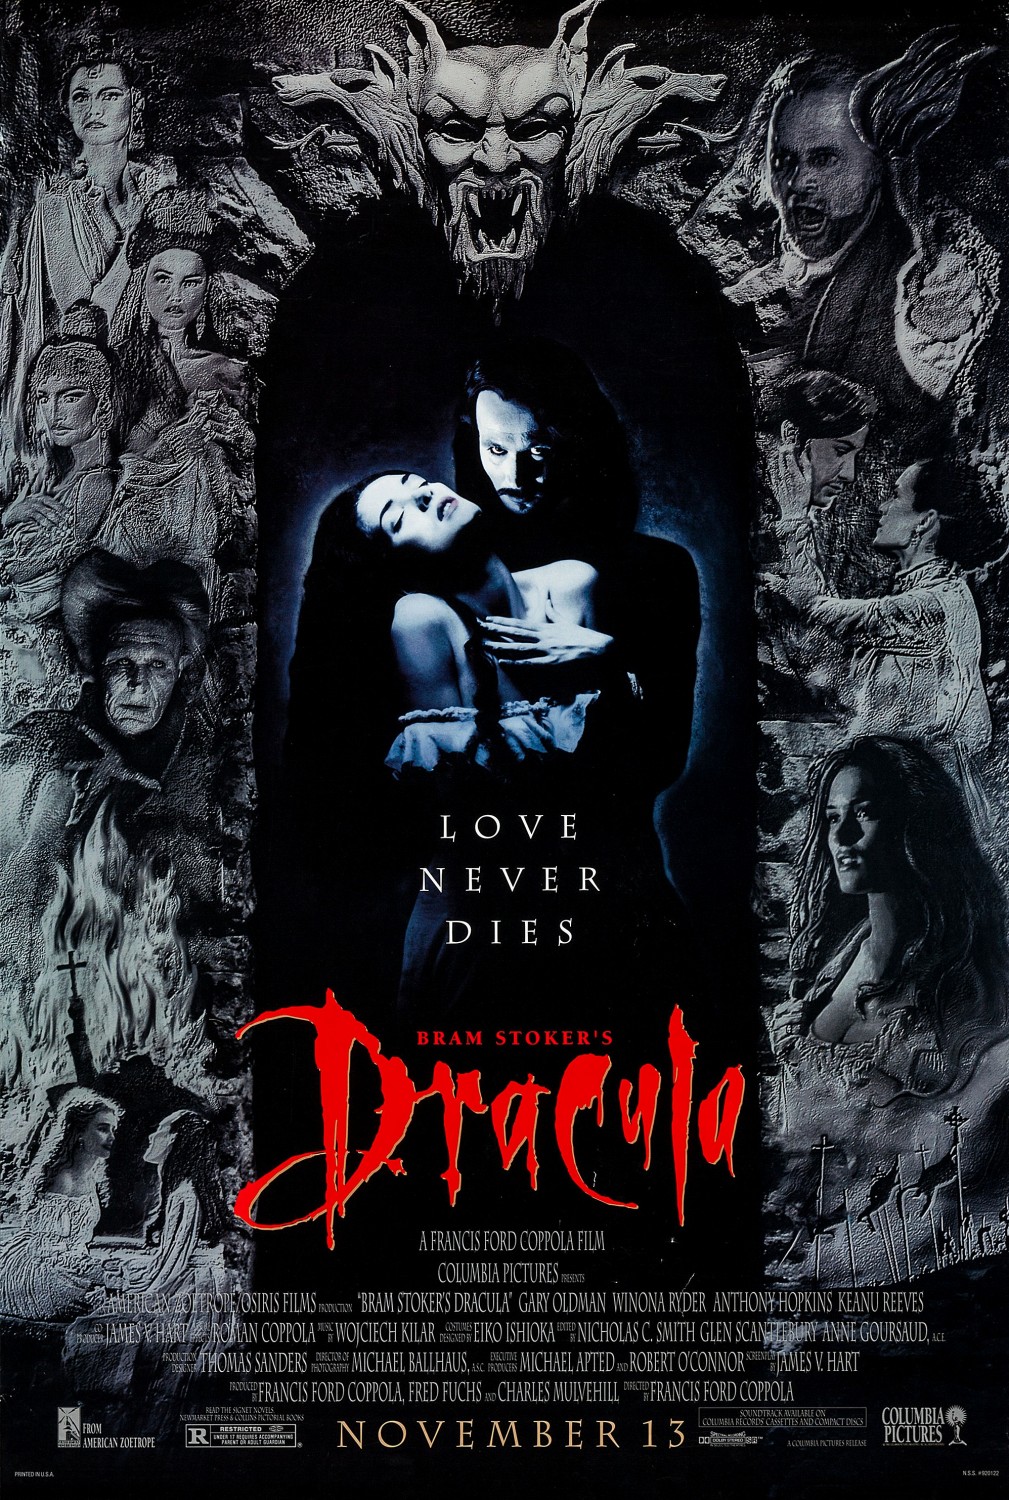 Bram Stoker's Dracula (1992) | Scratchpad | Fandom